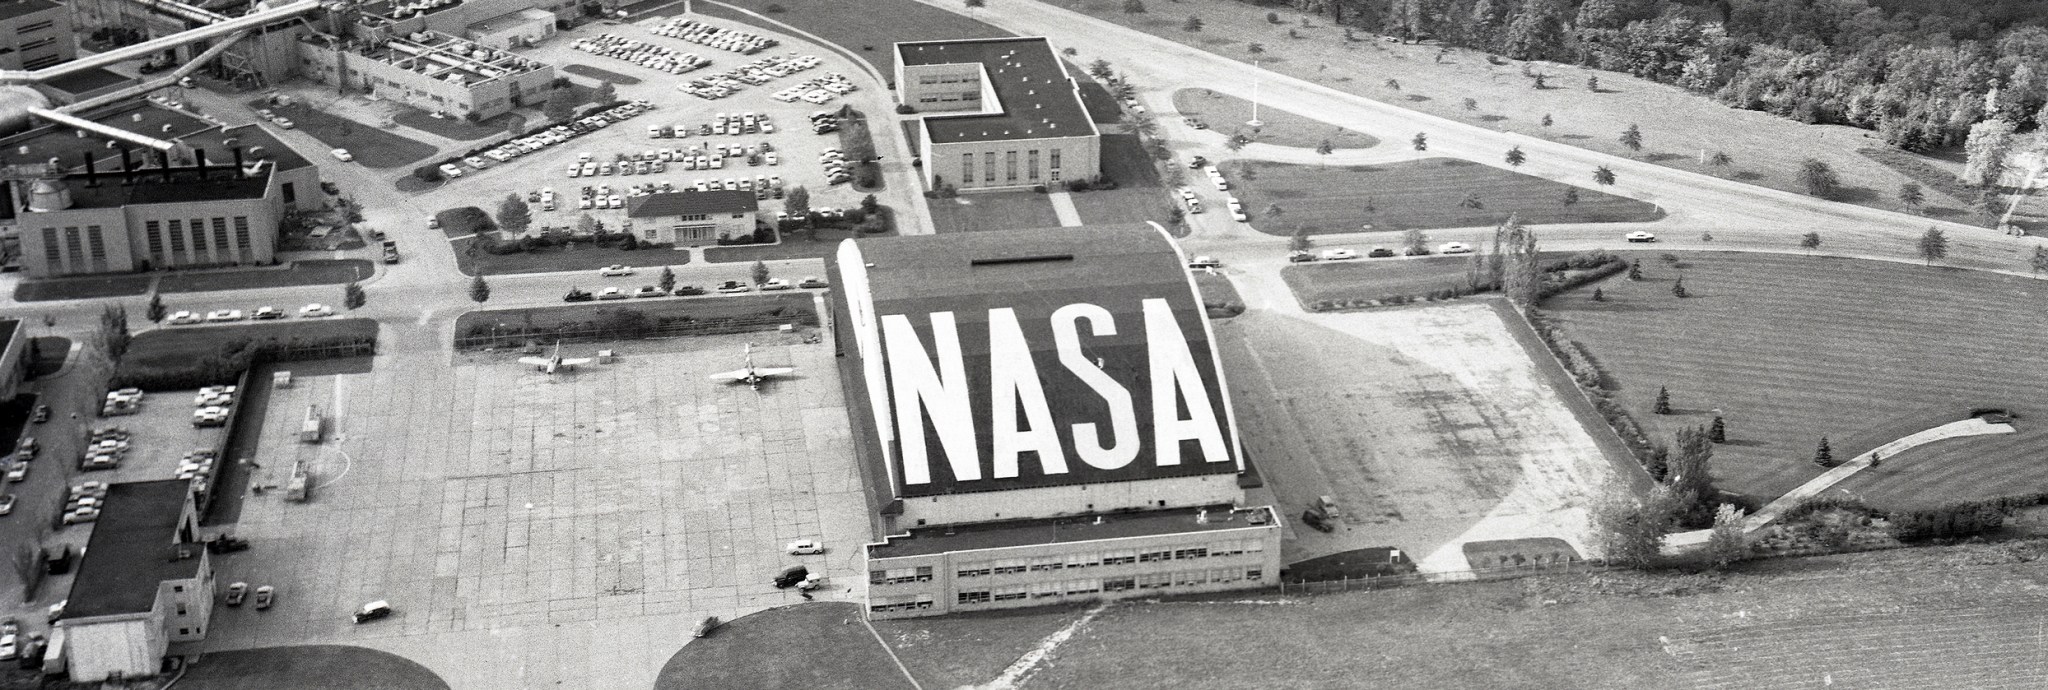 Aerial view of NASA hangar roof.